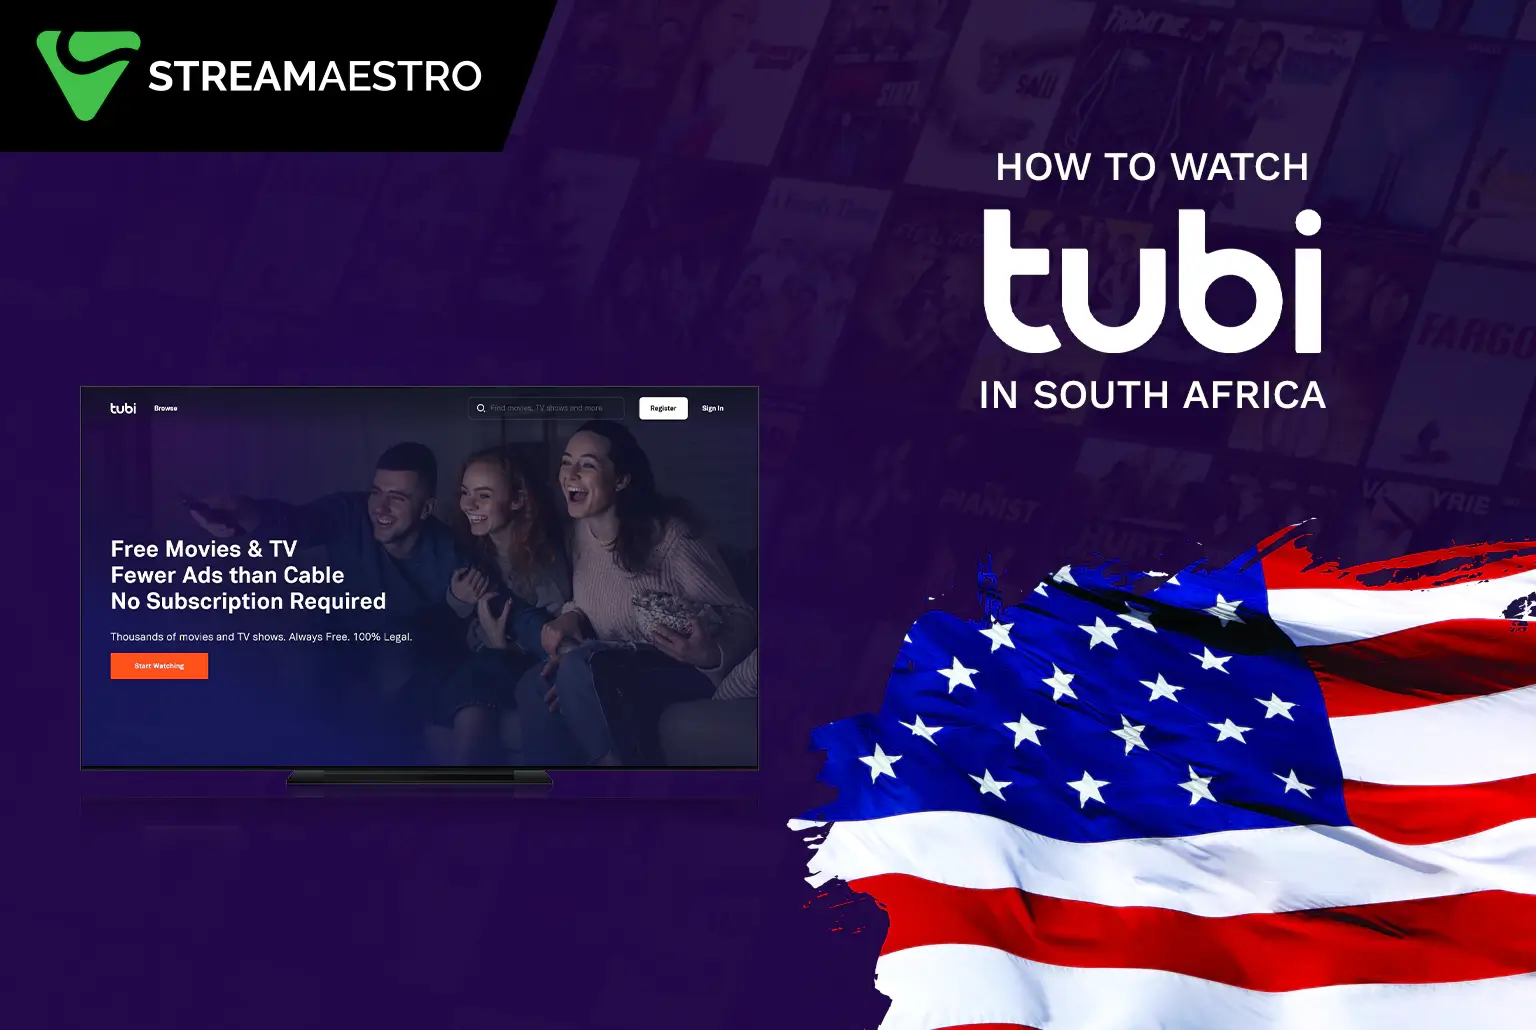 Tubi TV outside USA